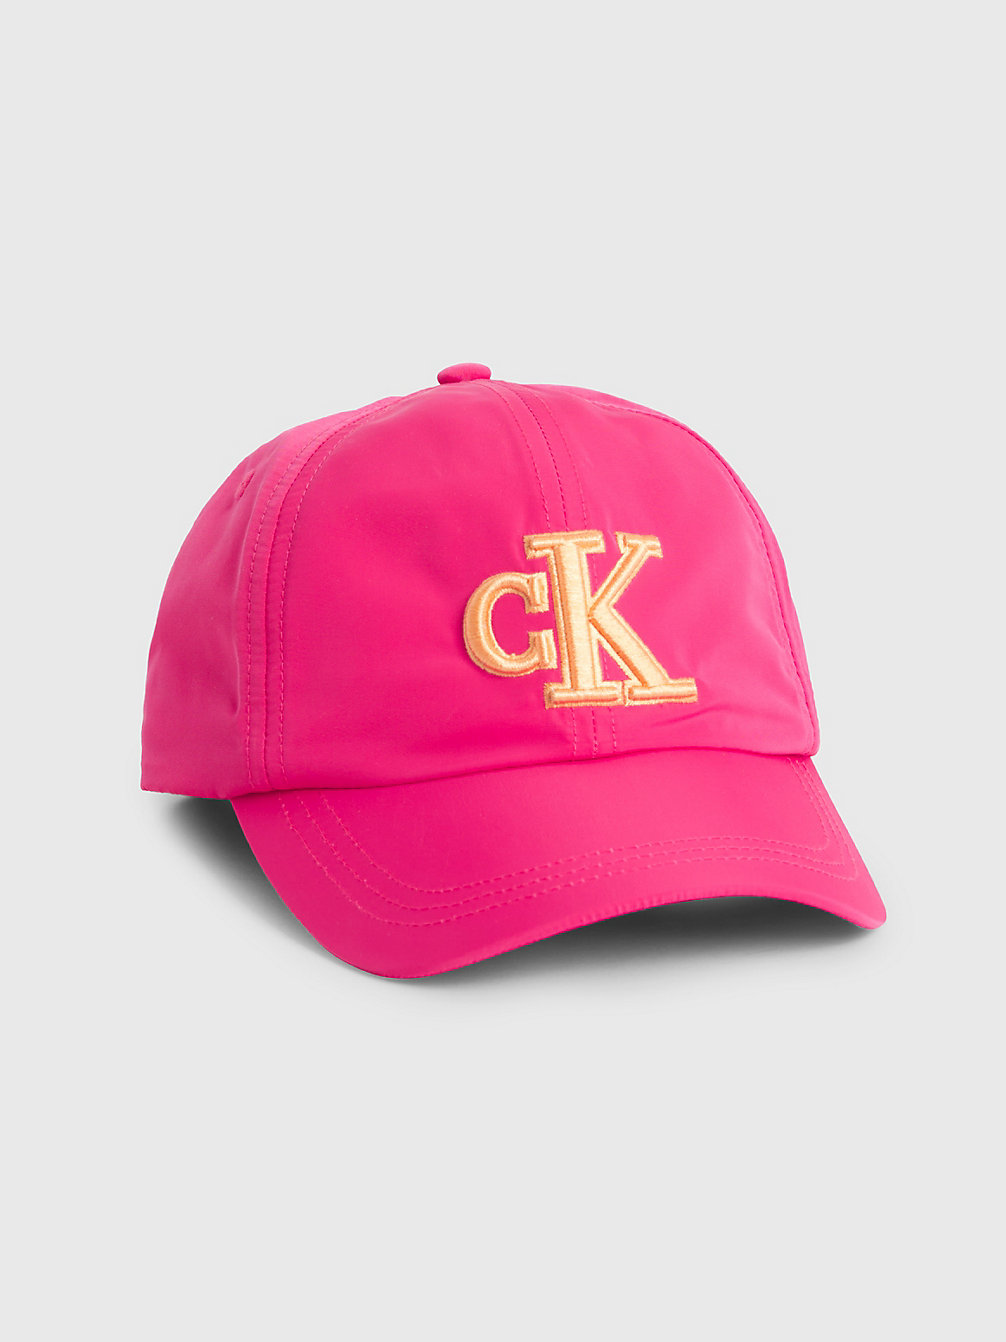 PINK FLASH Kappe Für Kinder Mit Logo undefined kids unisex Calvin Klein